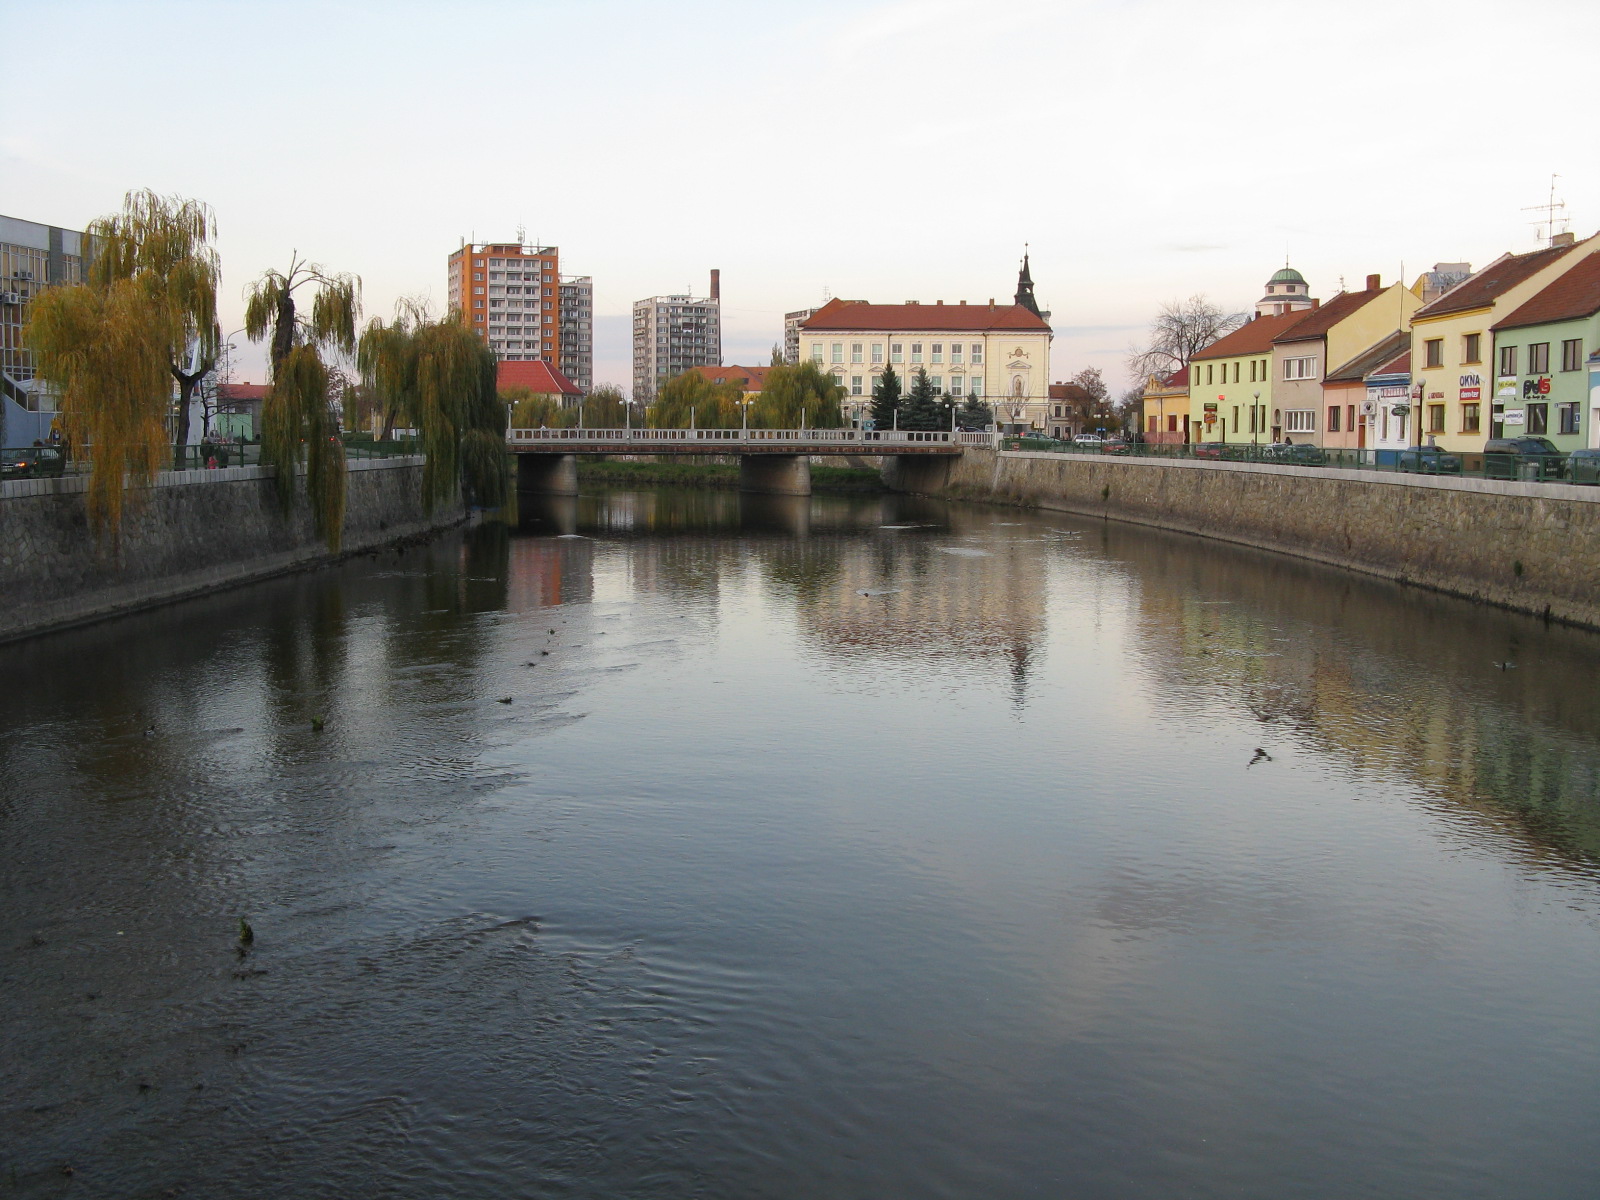 Nejlepší energeticky úsporný projekt (EPC) se loni připravoval v Břeclavi (na snímku centrum města), shodla se na počátku dubna odborná porota (Foto: Fredericus / CC BY 3.0)